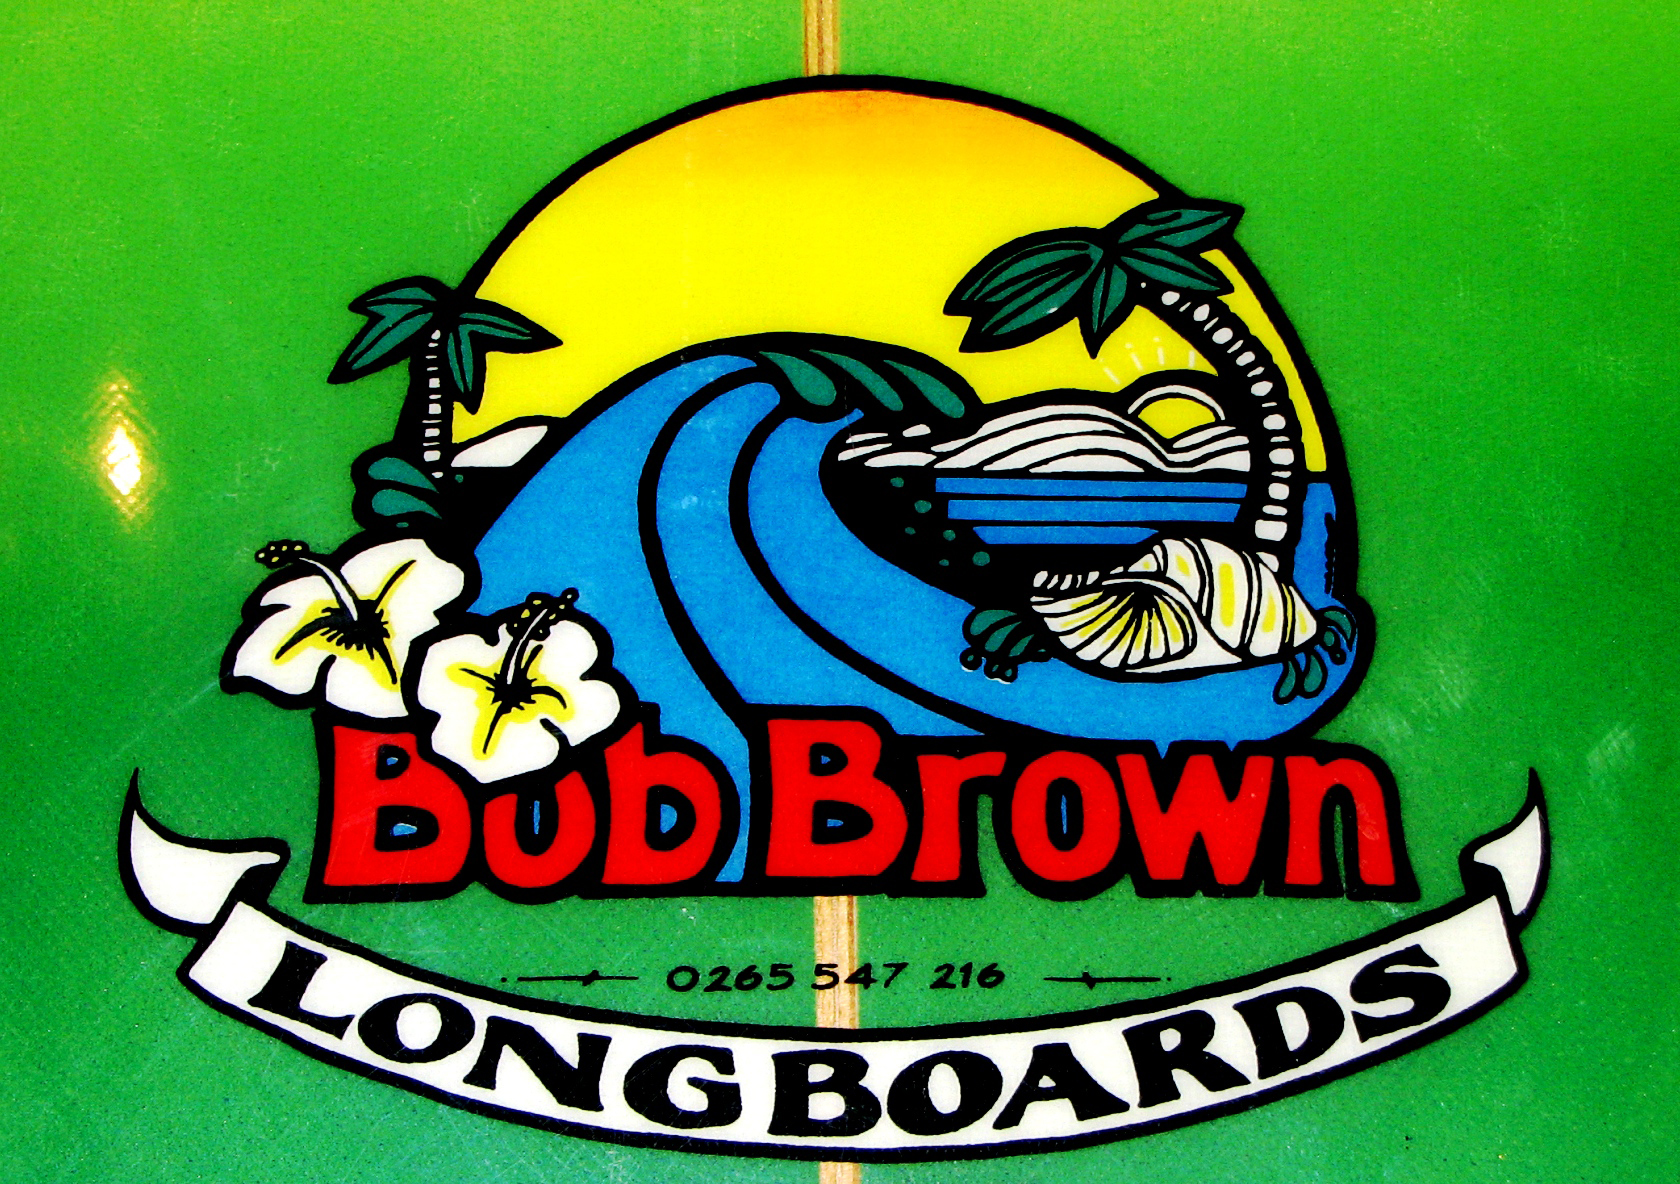 Bob Brown 09 020